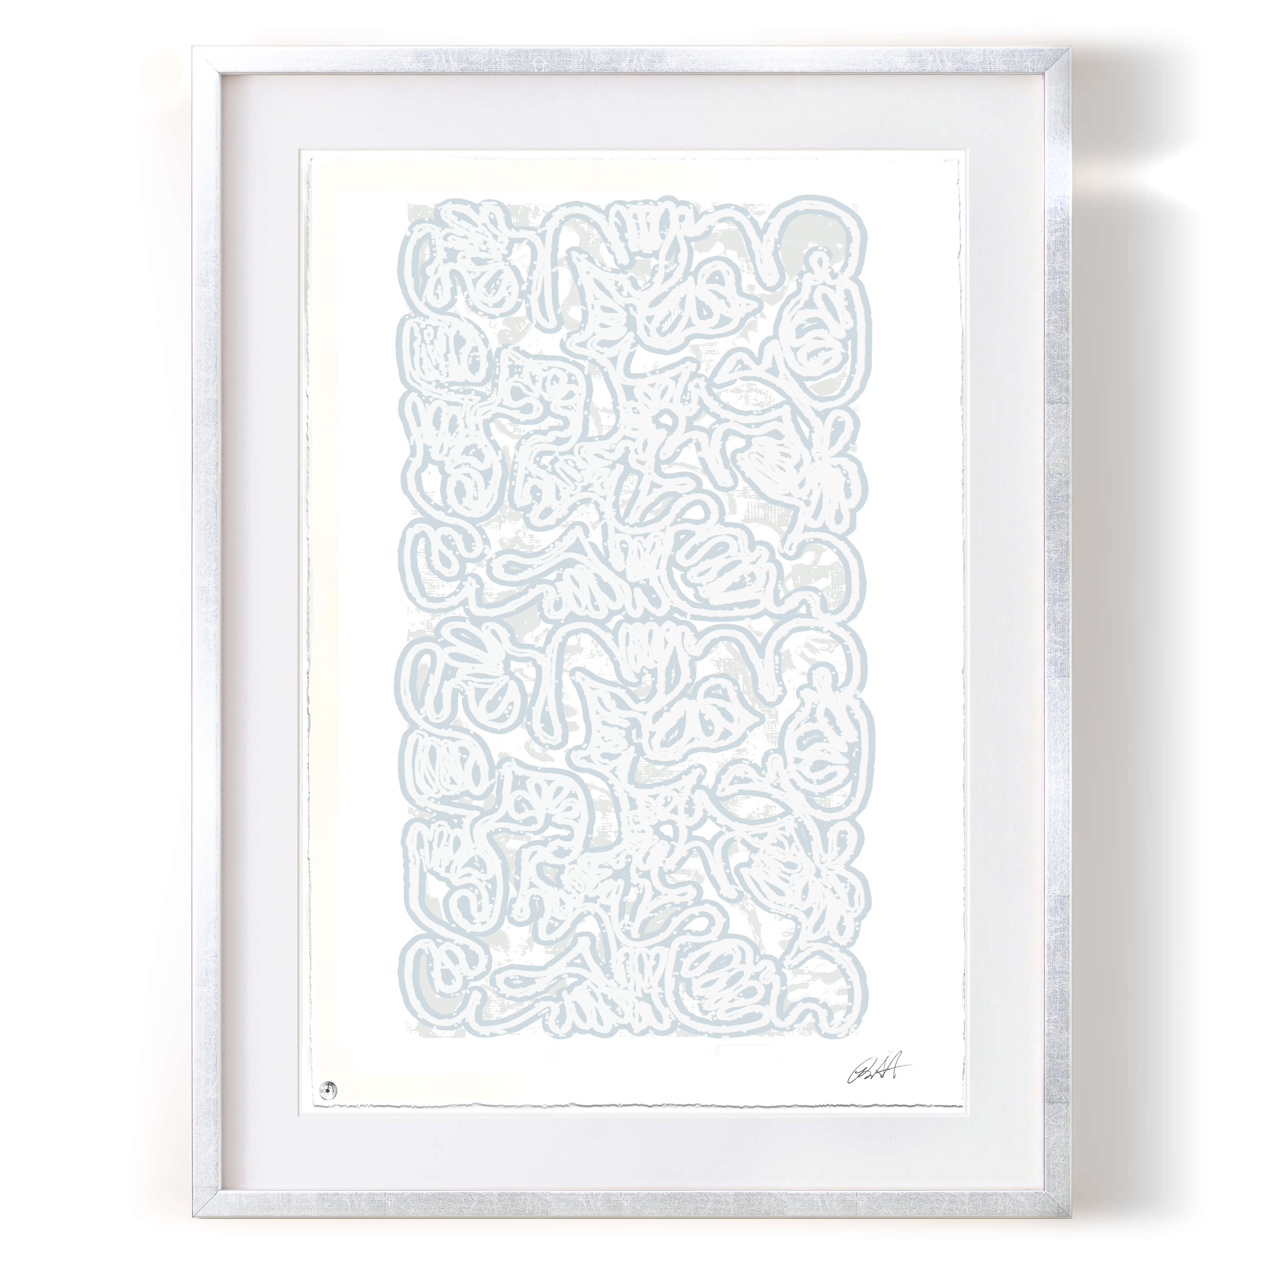 Robert Santoré “PAN AM Paper: 22 x 30in (55.88 x 76.2cm) Framed: 30 x 38in (76.2 x 96.52cm)Silkscreen, high gloss enamel on 100% cotton rag w/NFC chip